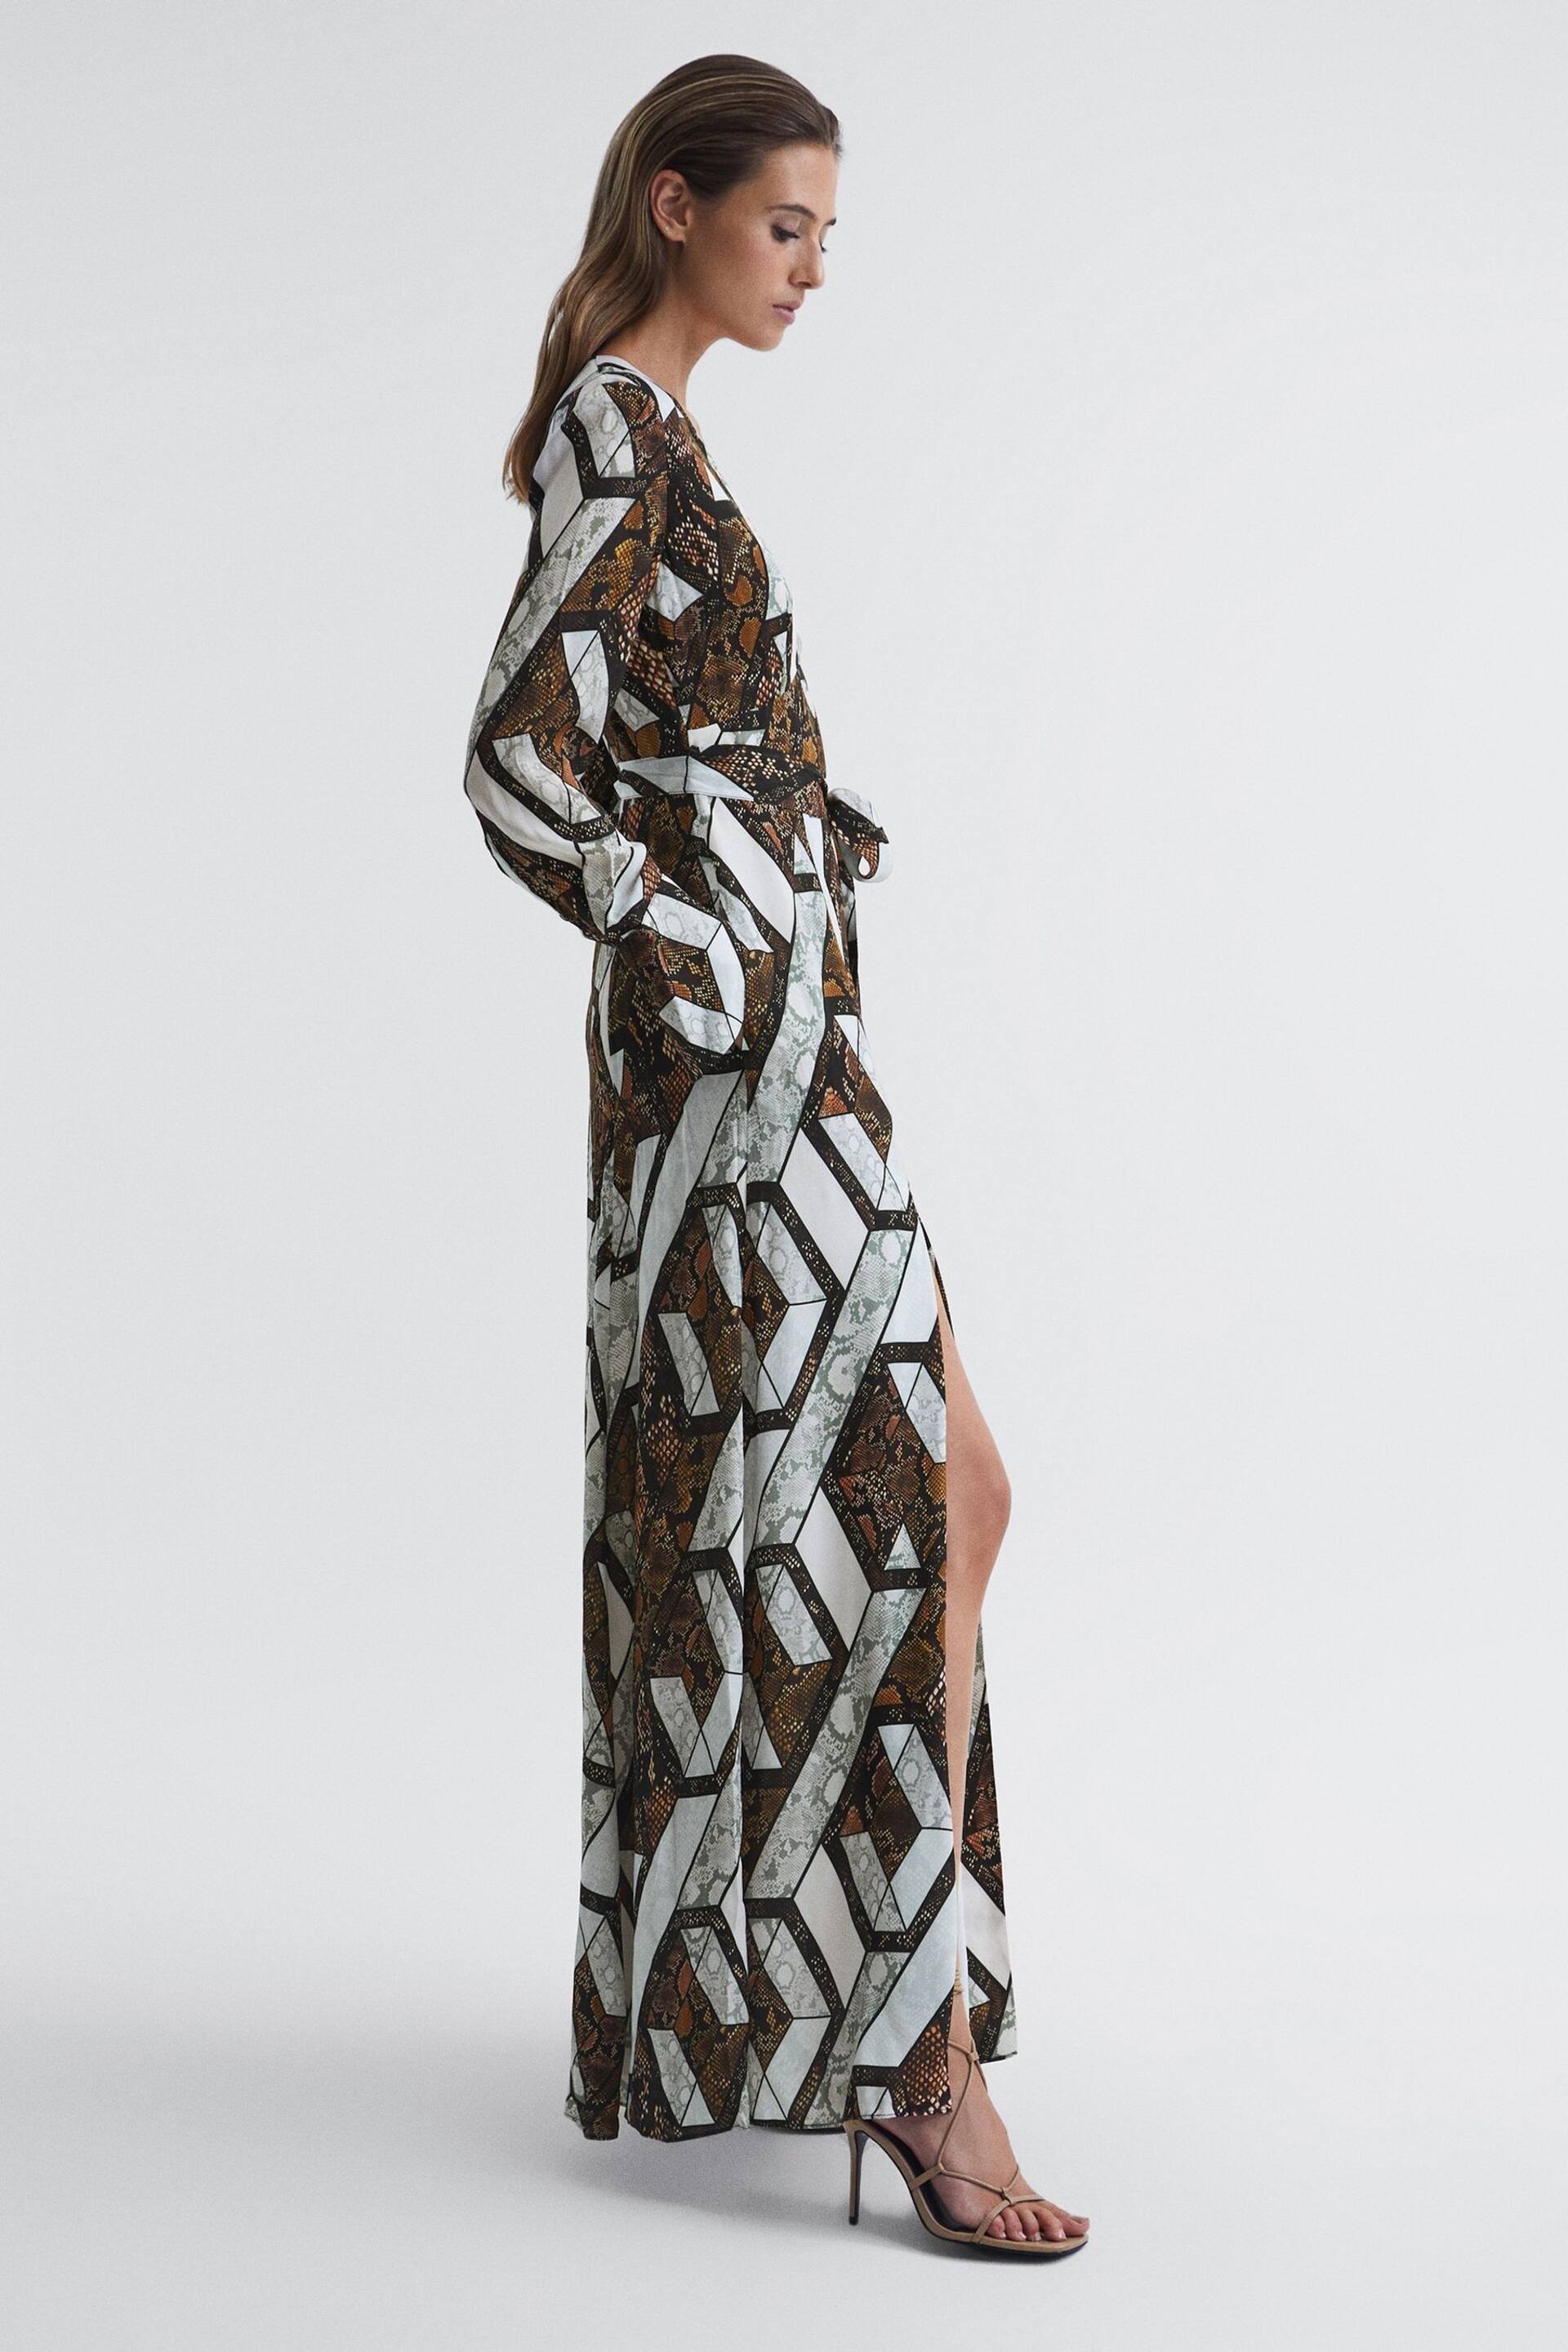 Reiss Brown Loren Petite Snake Print Plunge Maxi Dress - Image 1 of 9